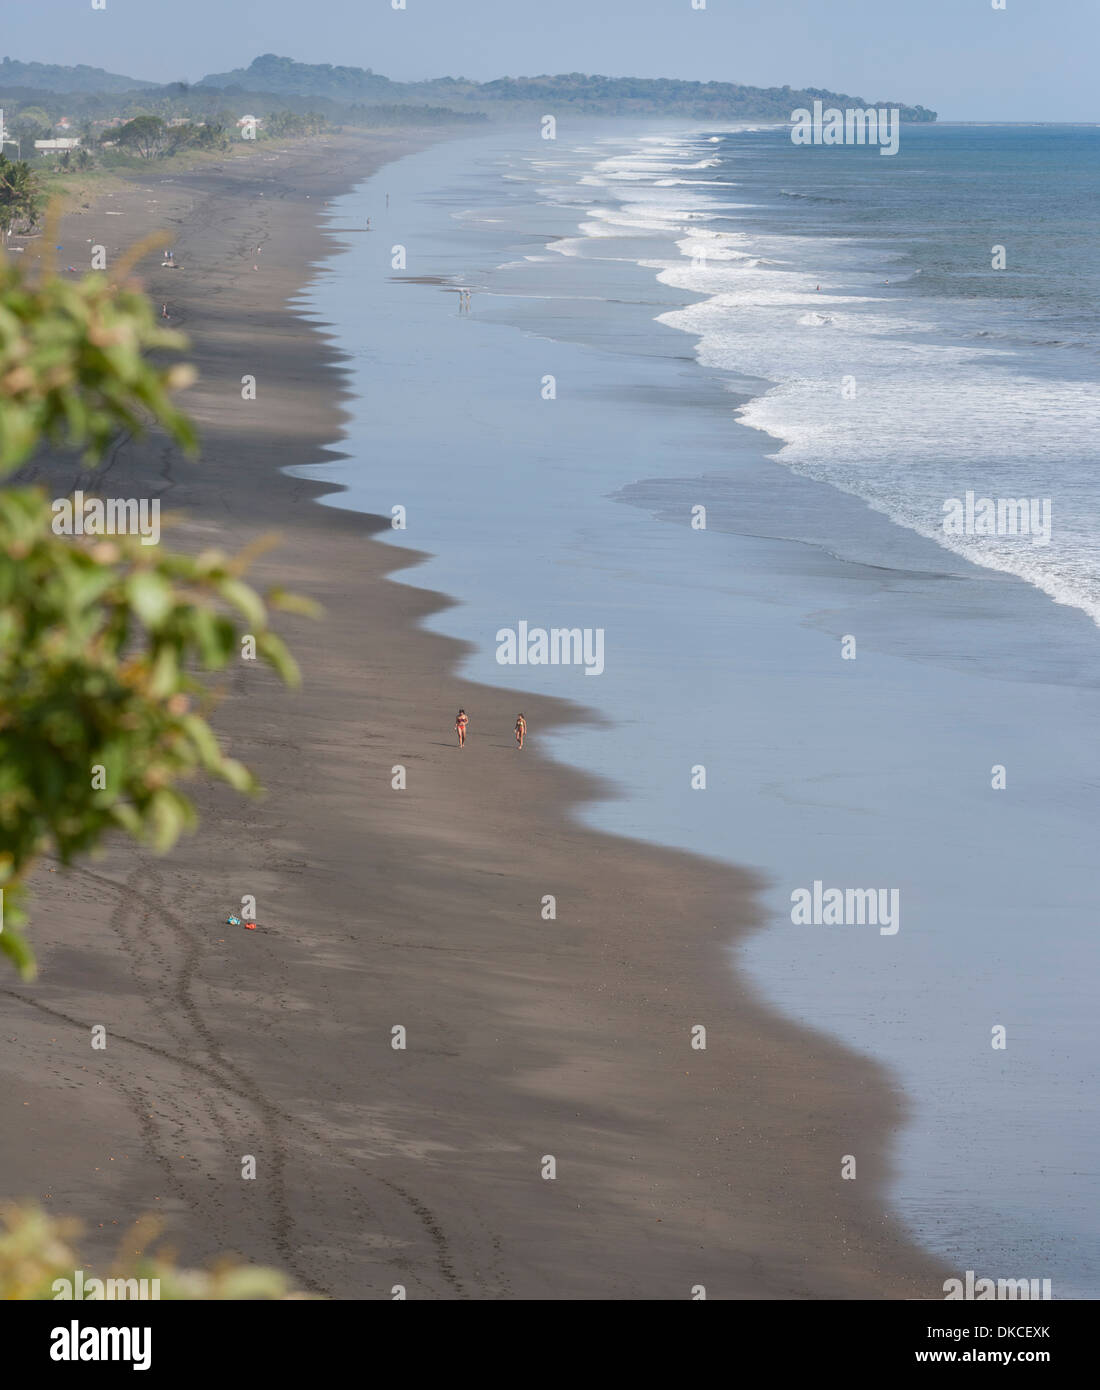 Une longue plage sur la côte Pacifique du Costa Rica nommé Playa Hermosa. Banque D'Images